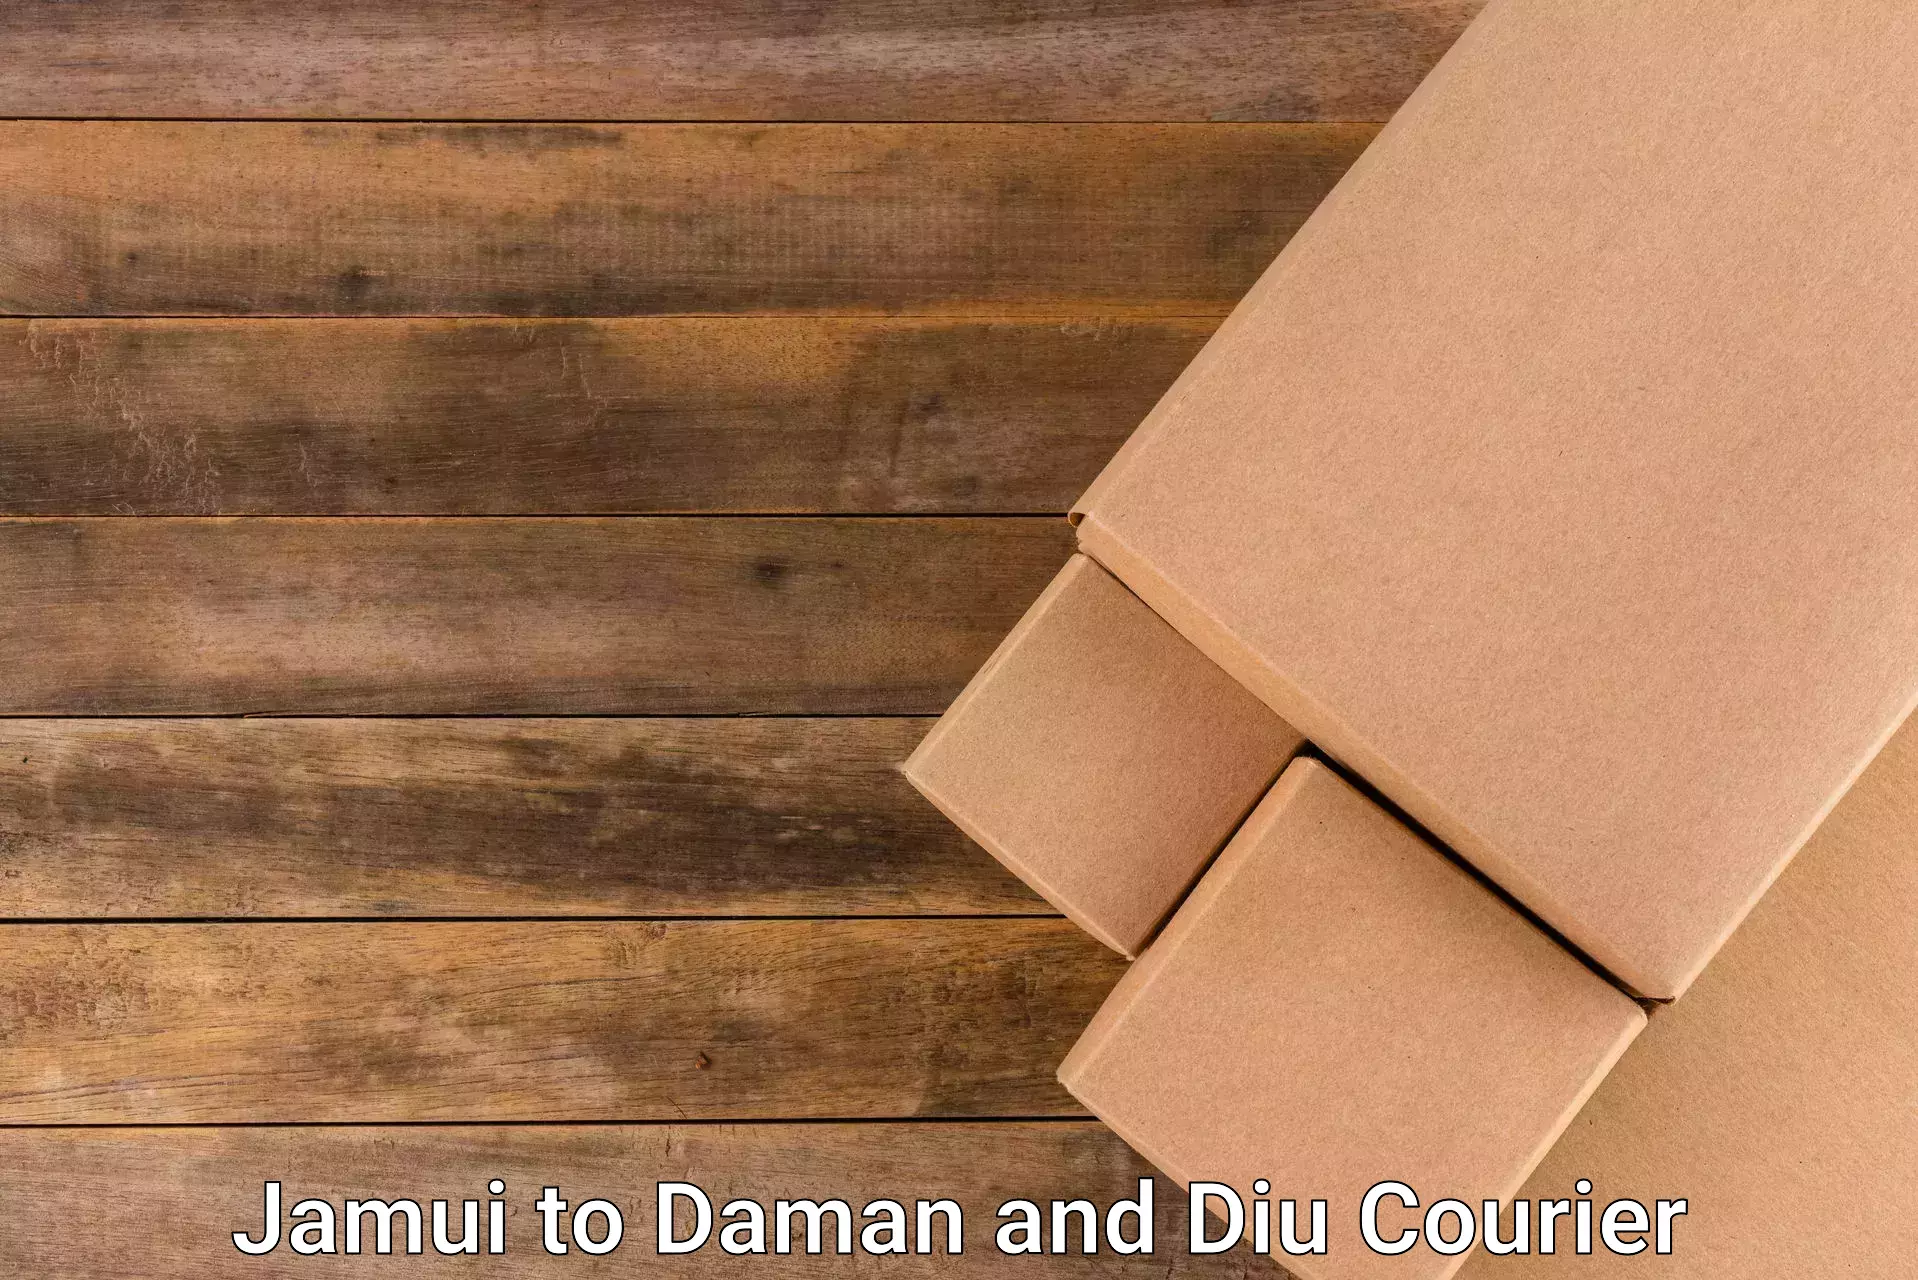 Efficient cargo handling Jamui to Daman and Diu